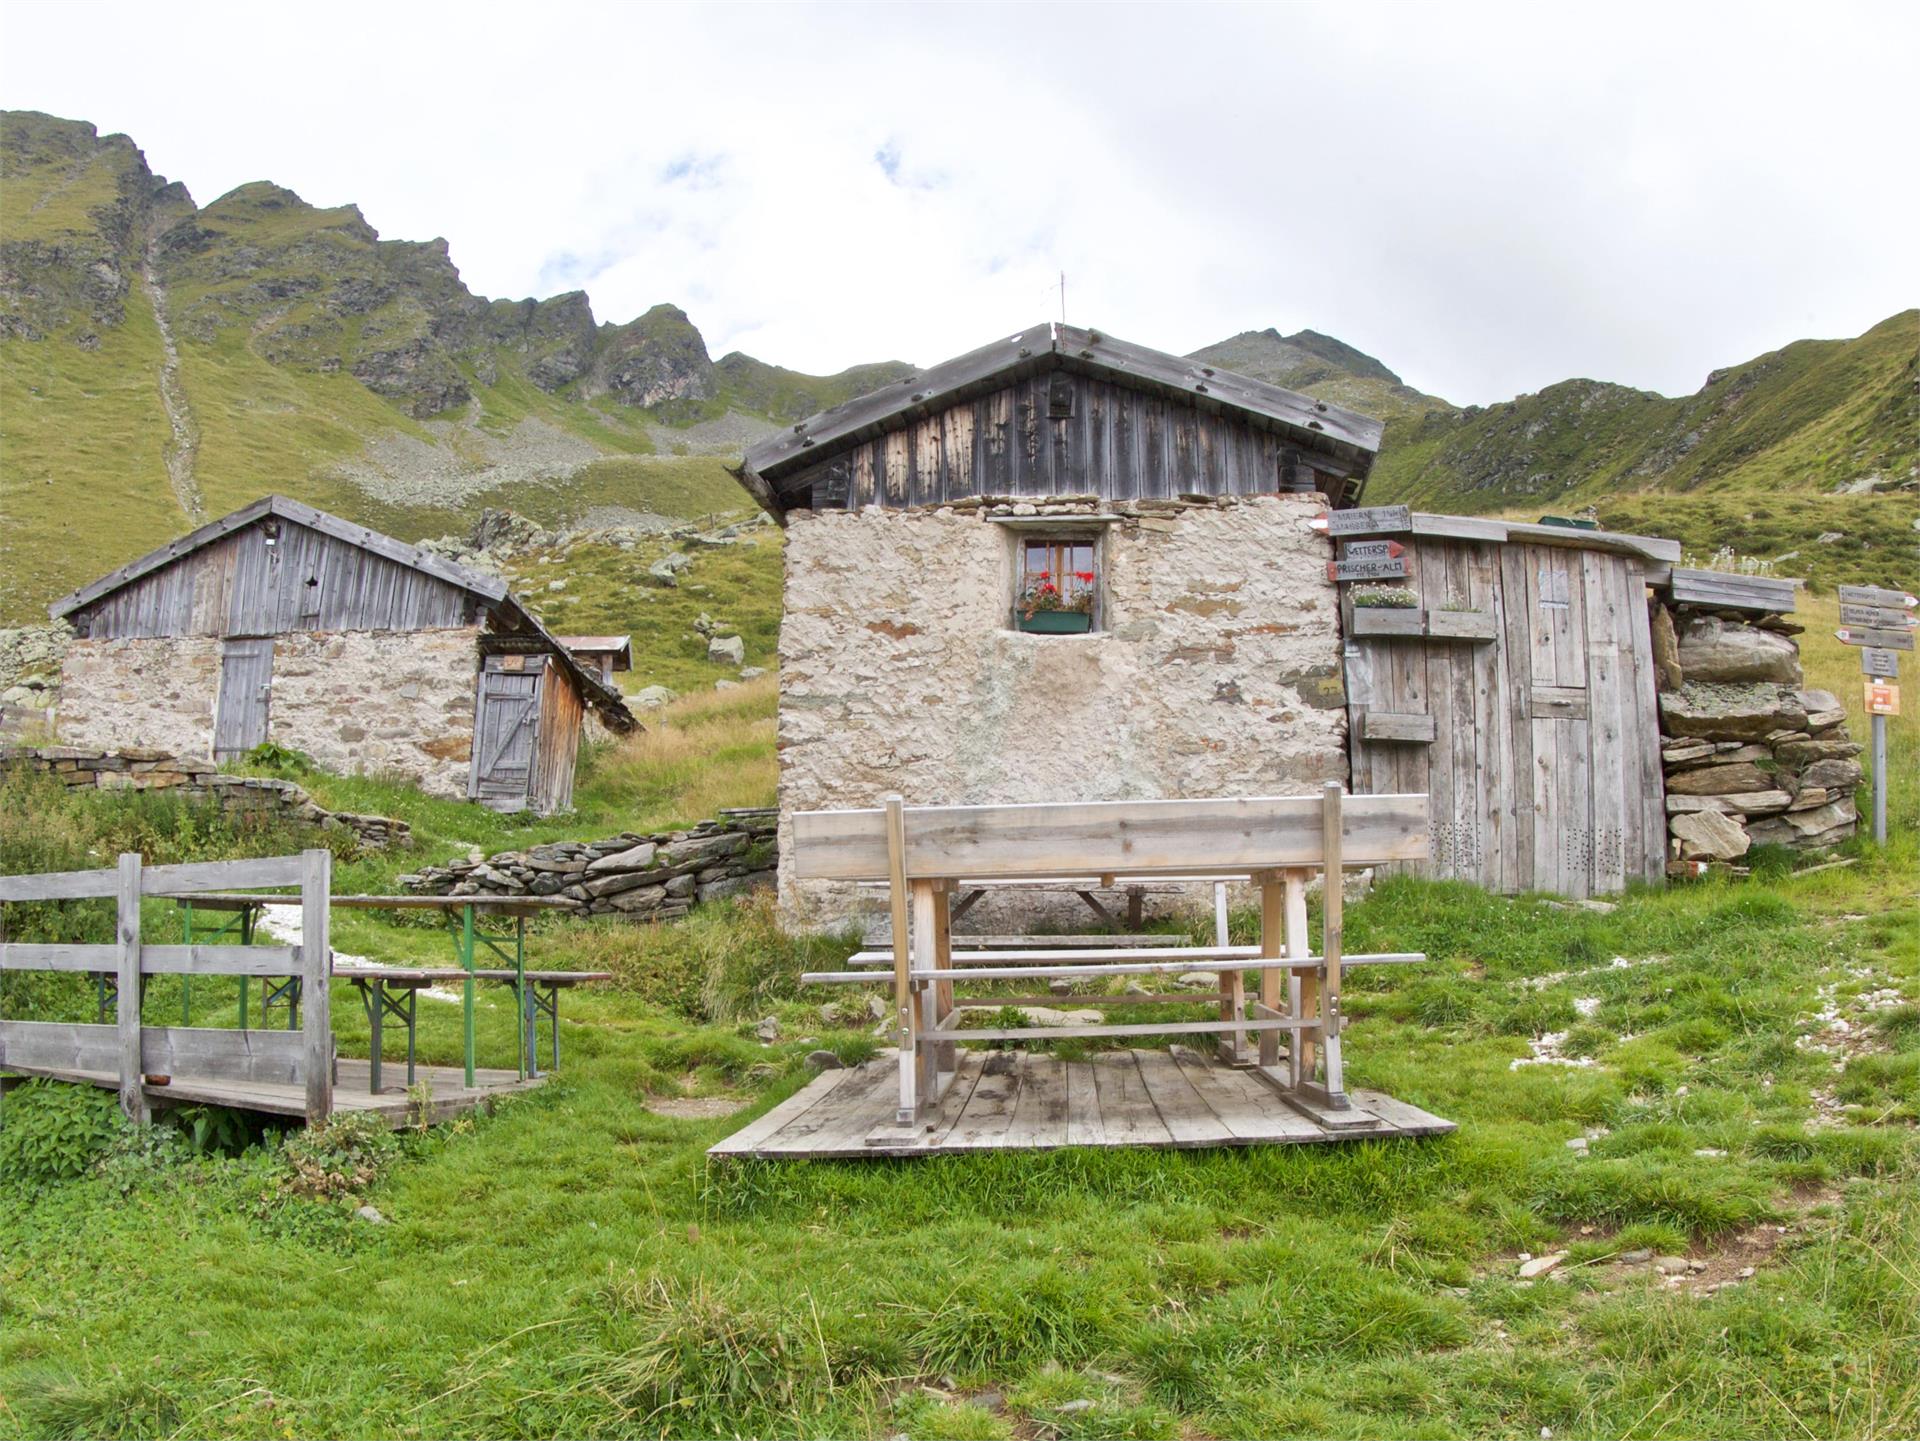 Excursion to the hut Prischeralm